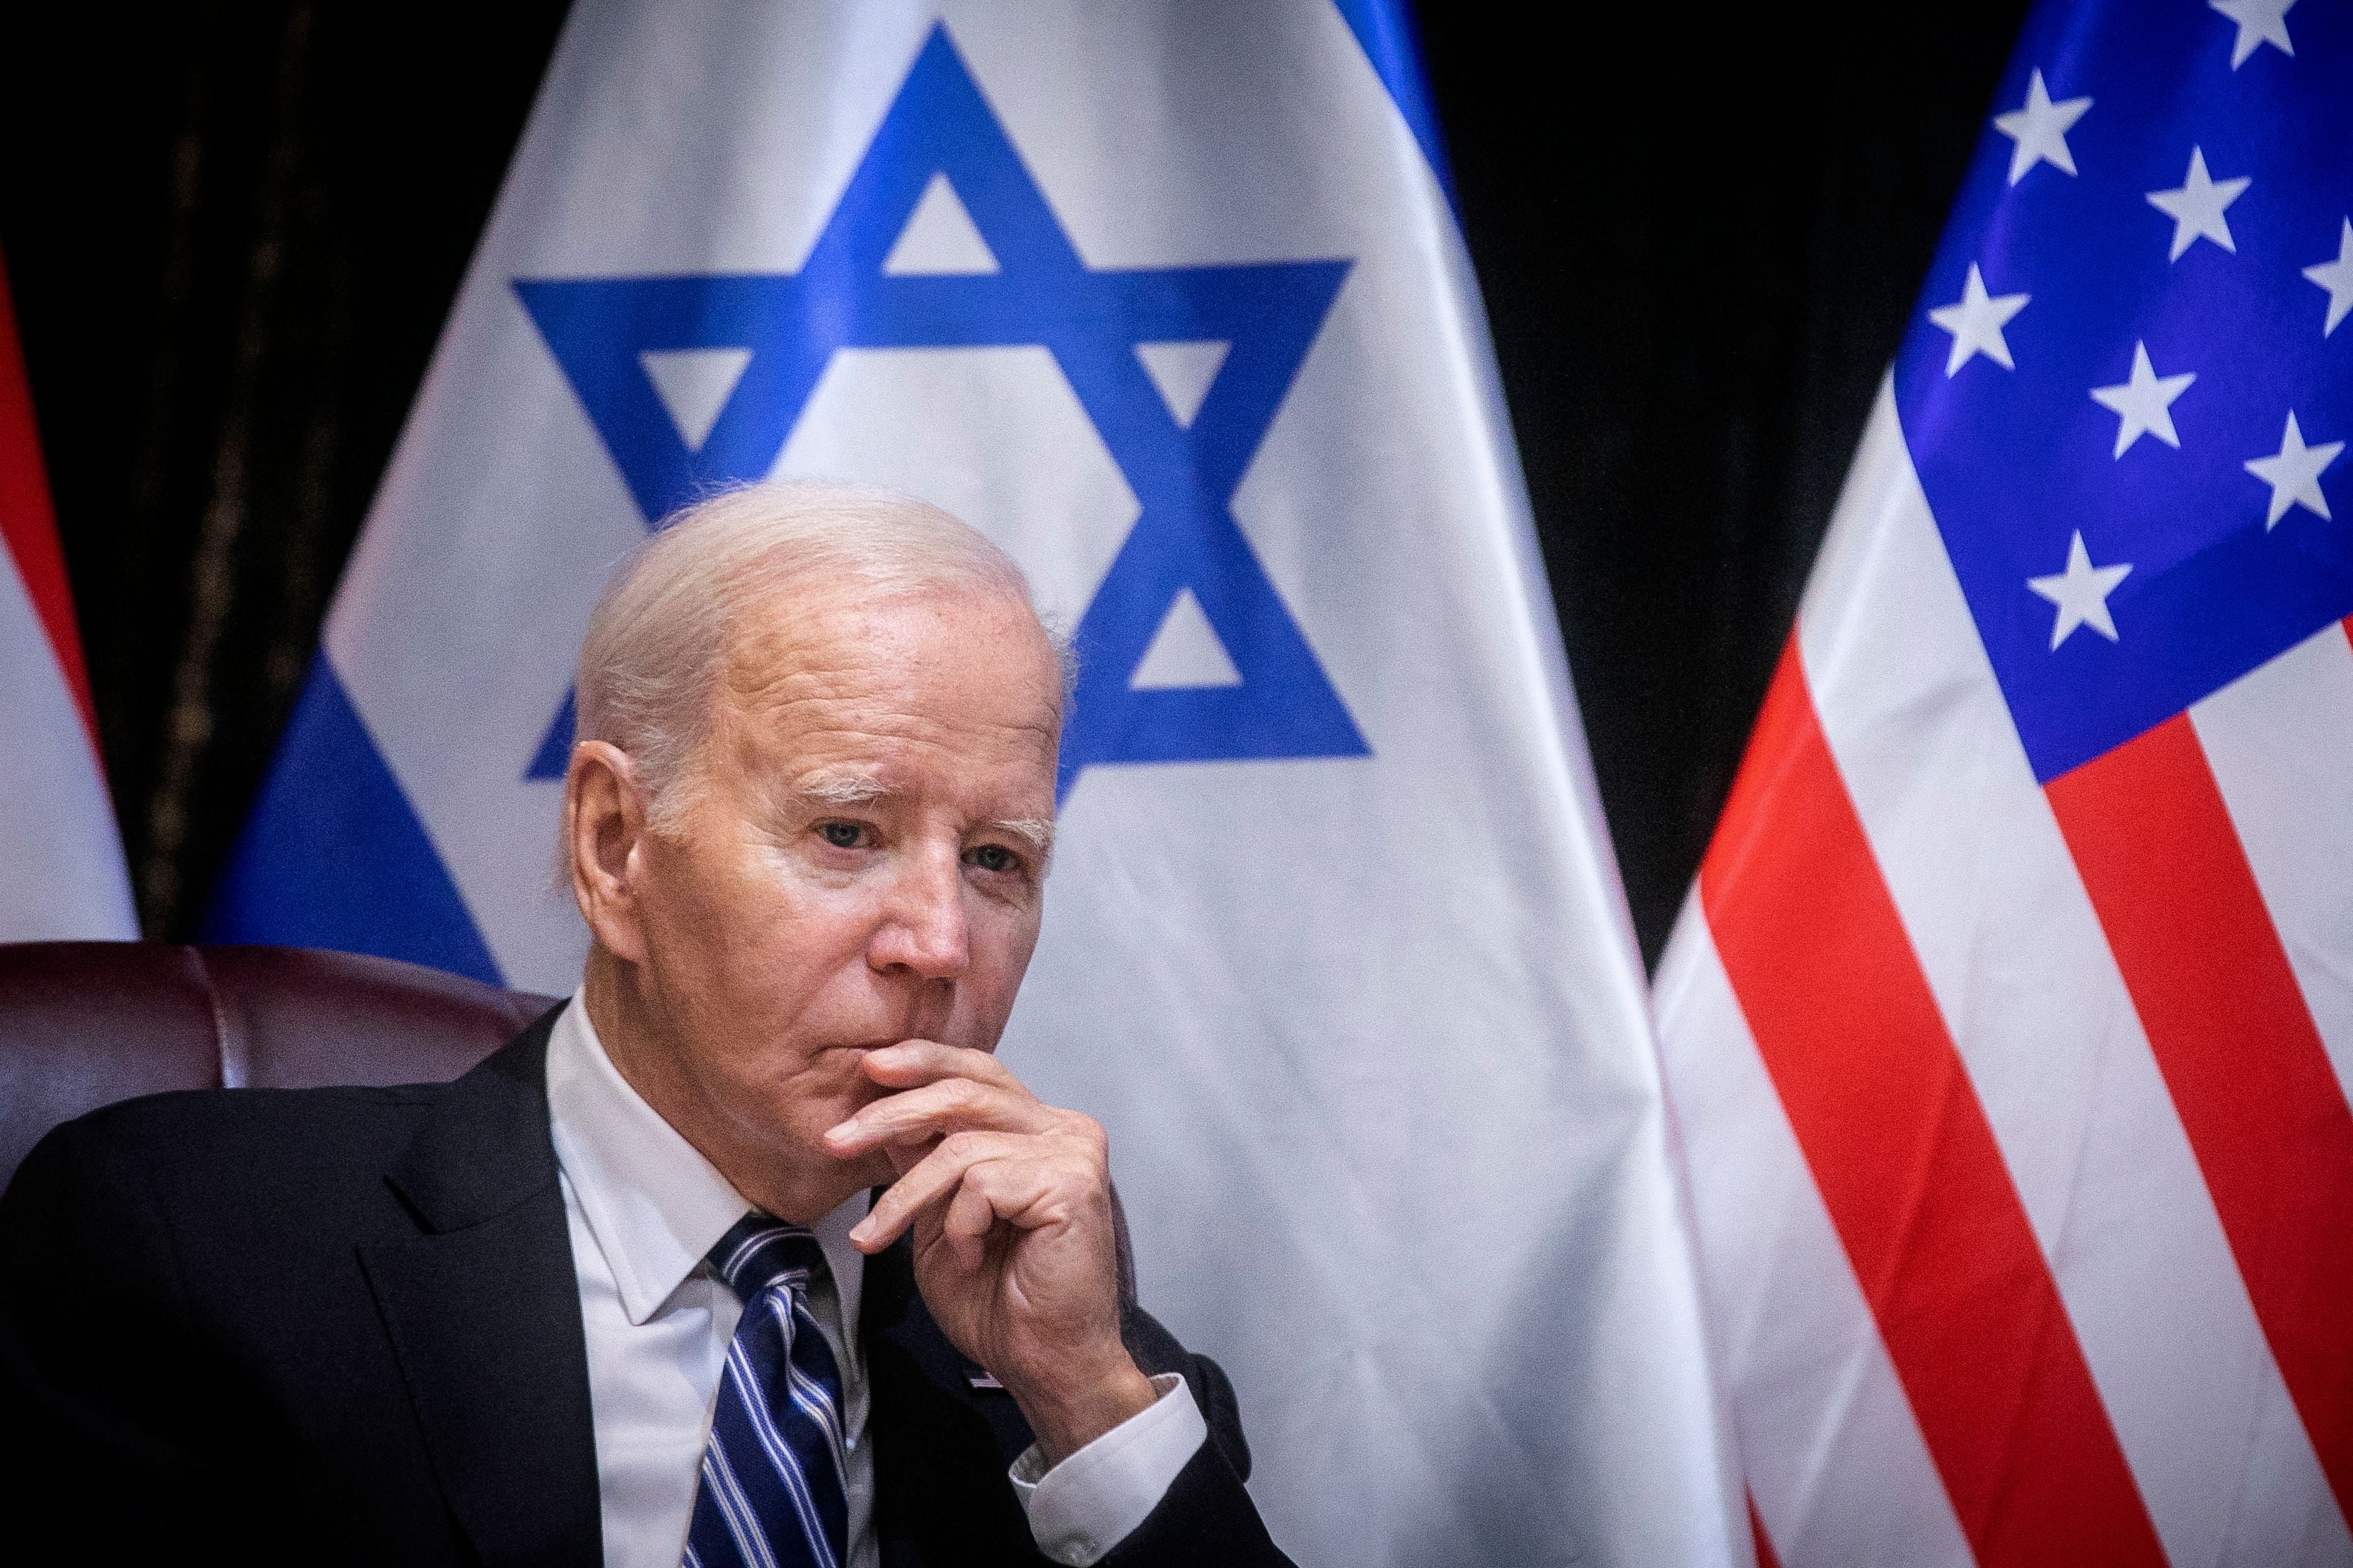 El presidente estadounidense Joe Biden se unió a una reunión del cabinete de guerra durante una visita a Tel Aviv esta semana